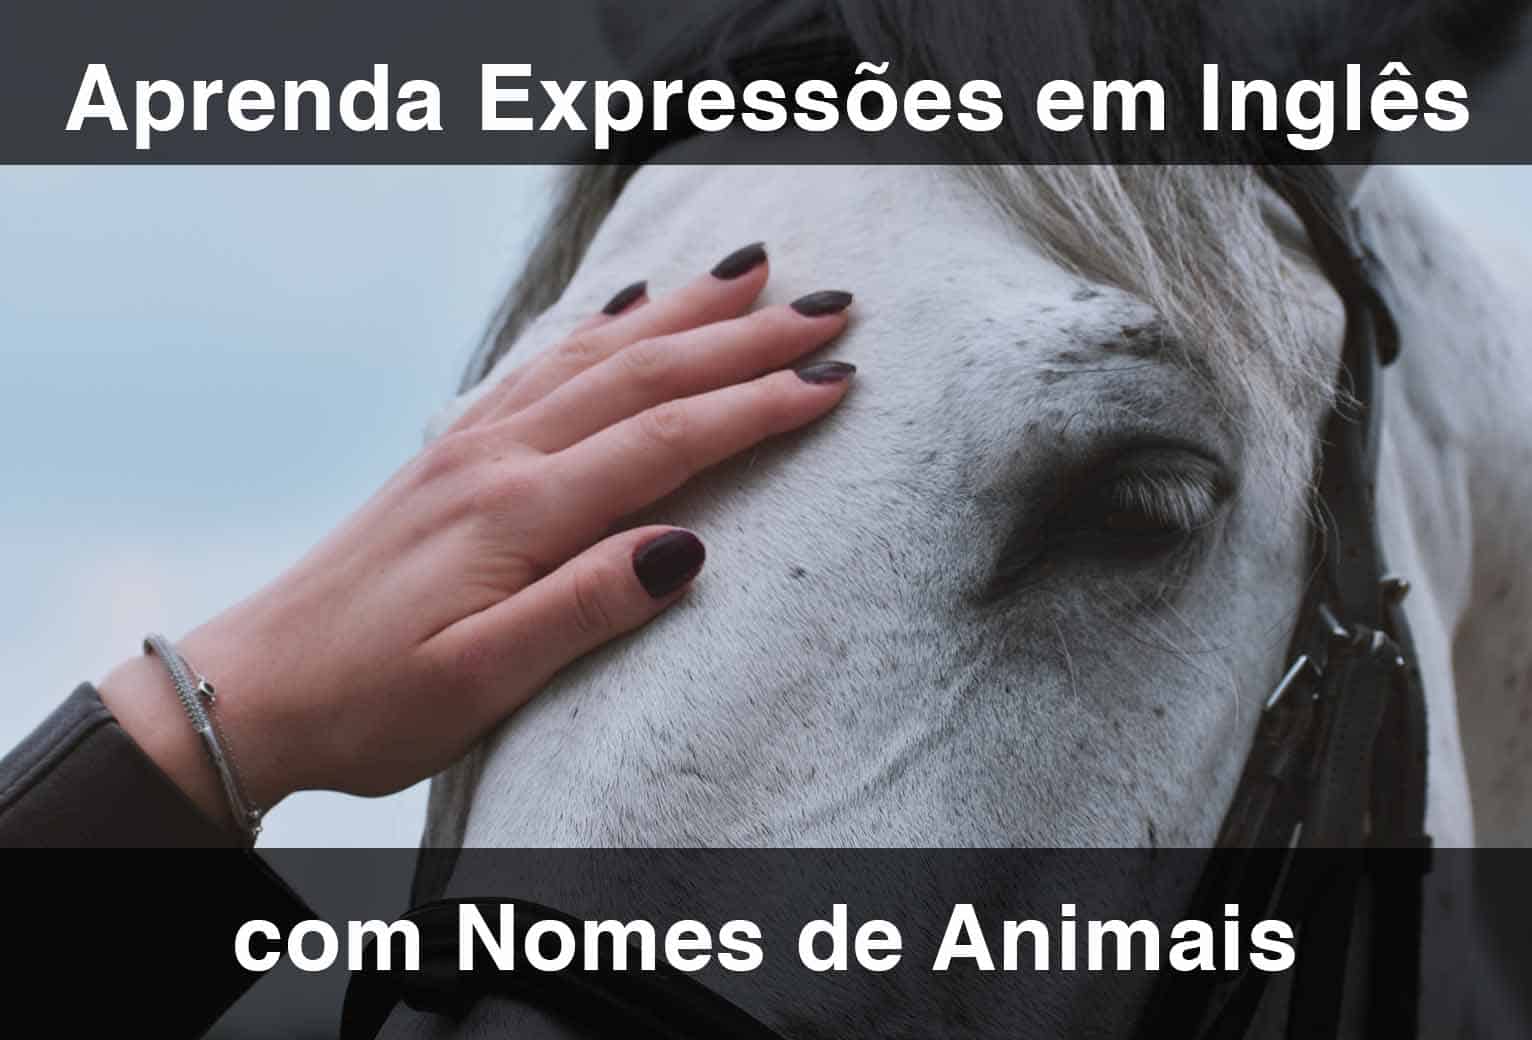 HORSE: expressões idiomáticas com HORSE (com tradução)